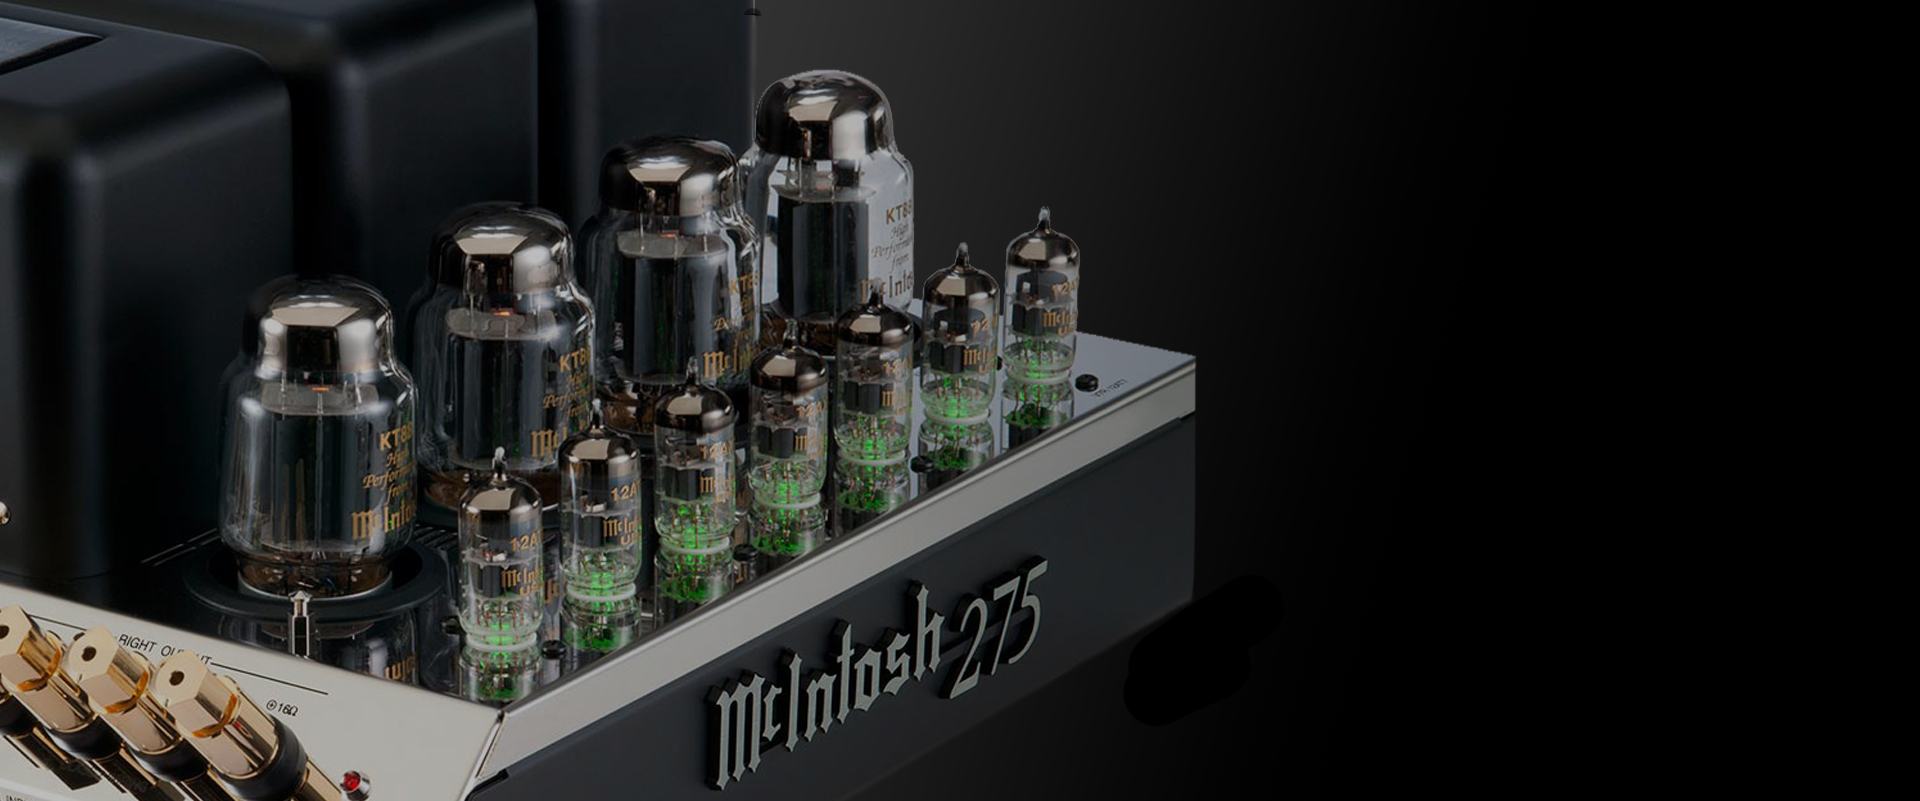 Mcintosh 275 amplifier آمپلی فایر مکینتاش275